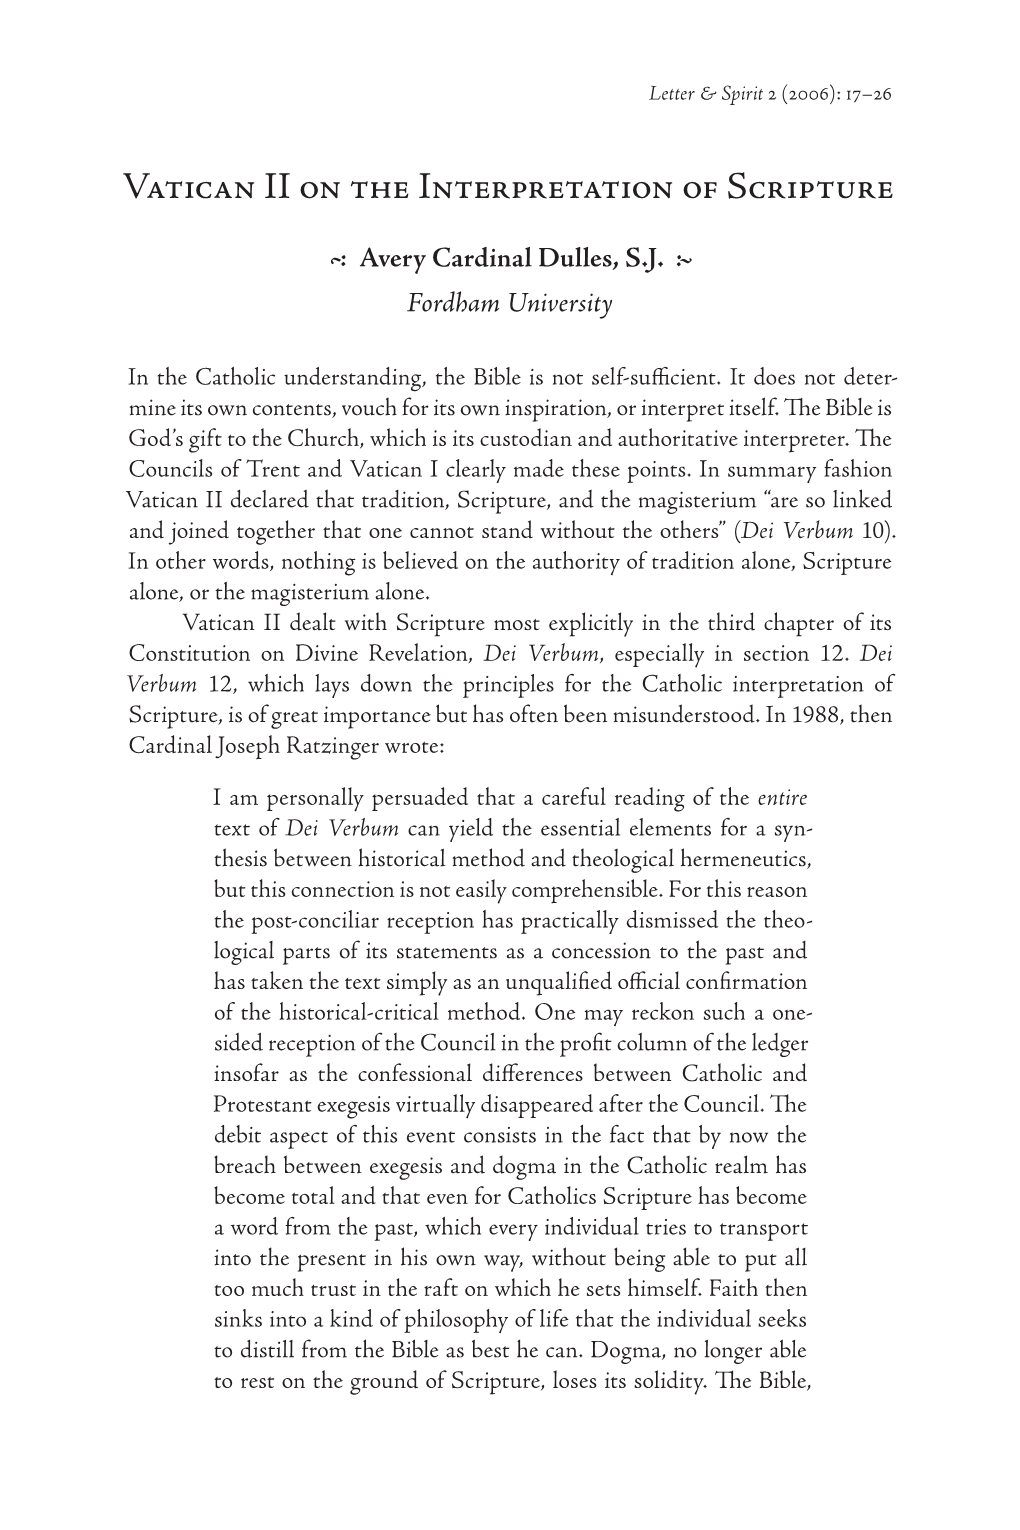 Vatican II on the Interpretation of Scripture